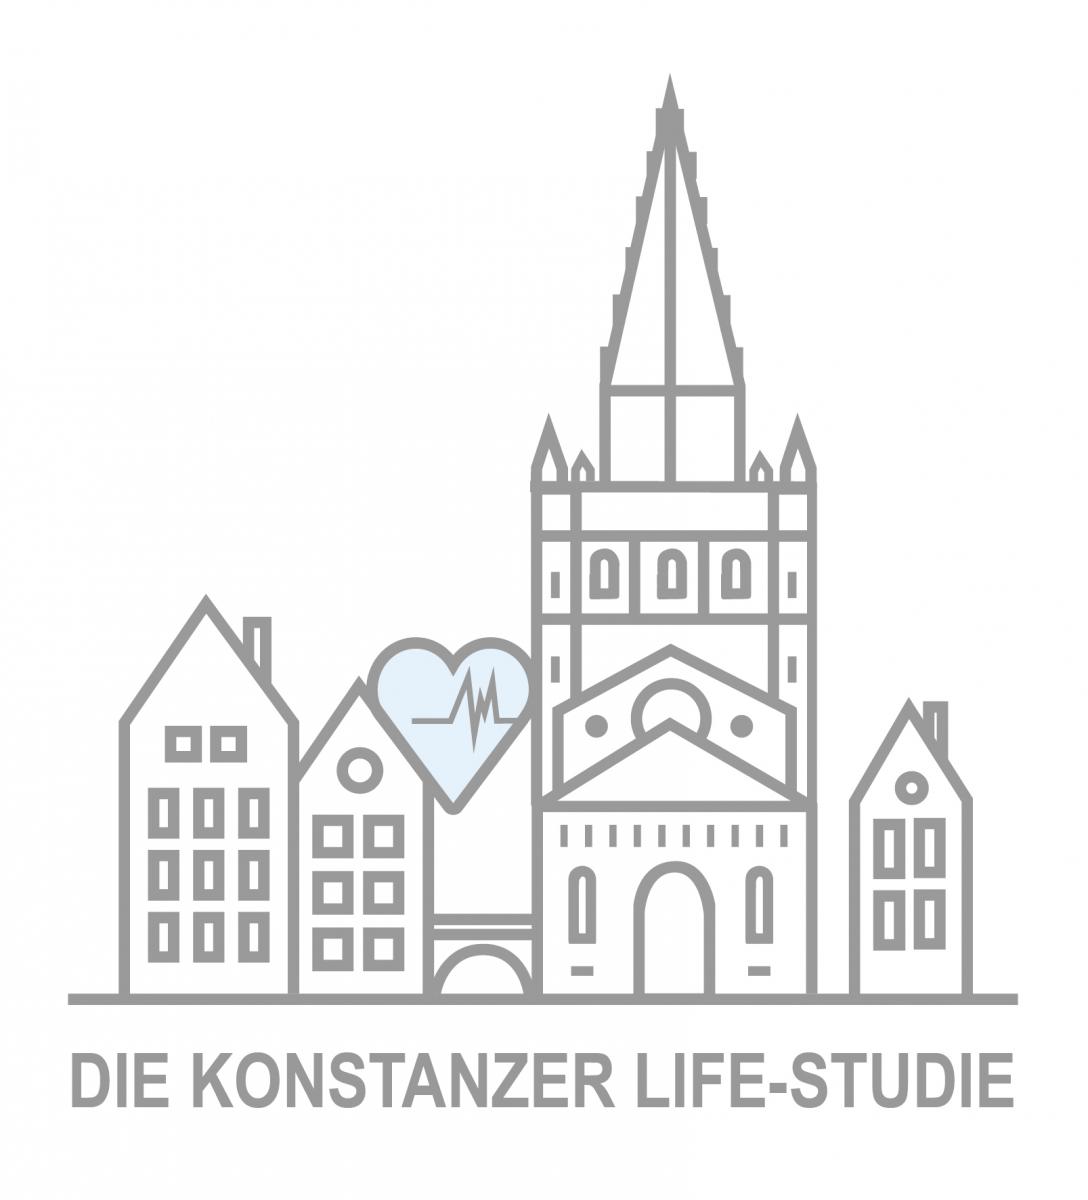 [Translate to Englisch:] Logo der Konstanzer Life-Studie, zeigt stilisierte Ansicht des Konstanzer Münster und Icons zur Gesundheit